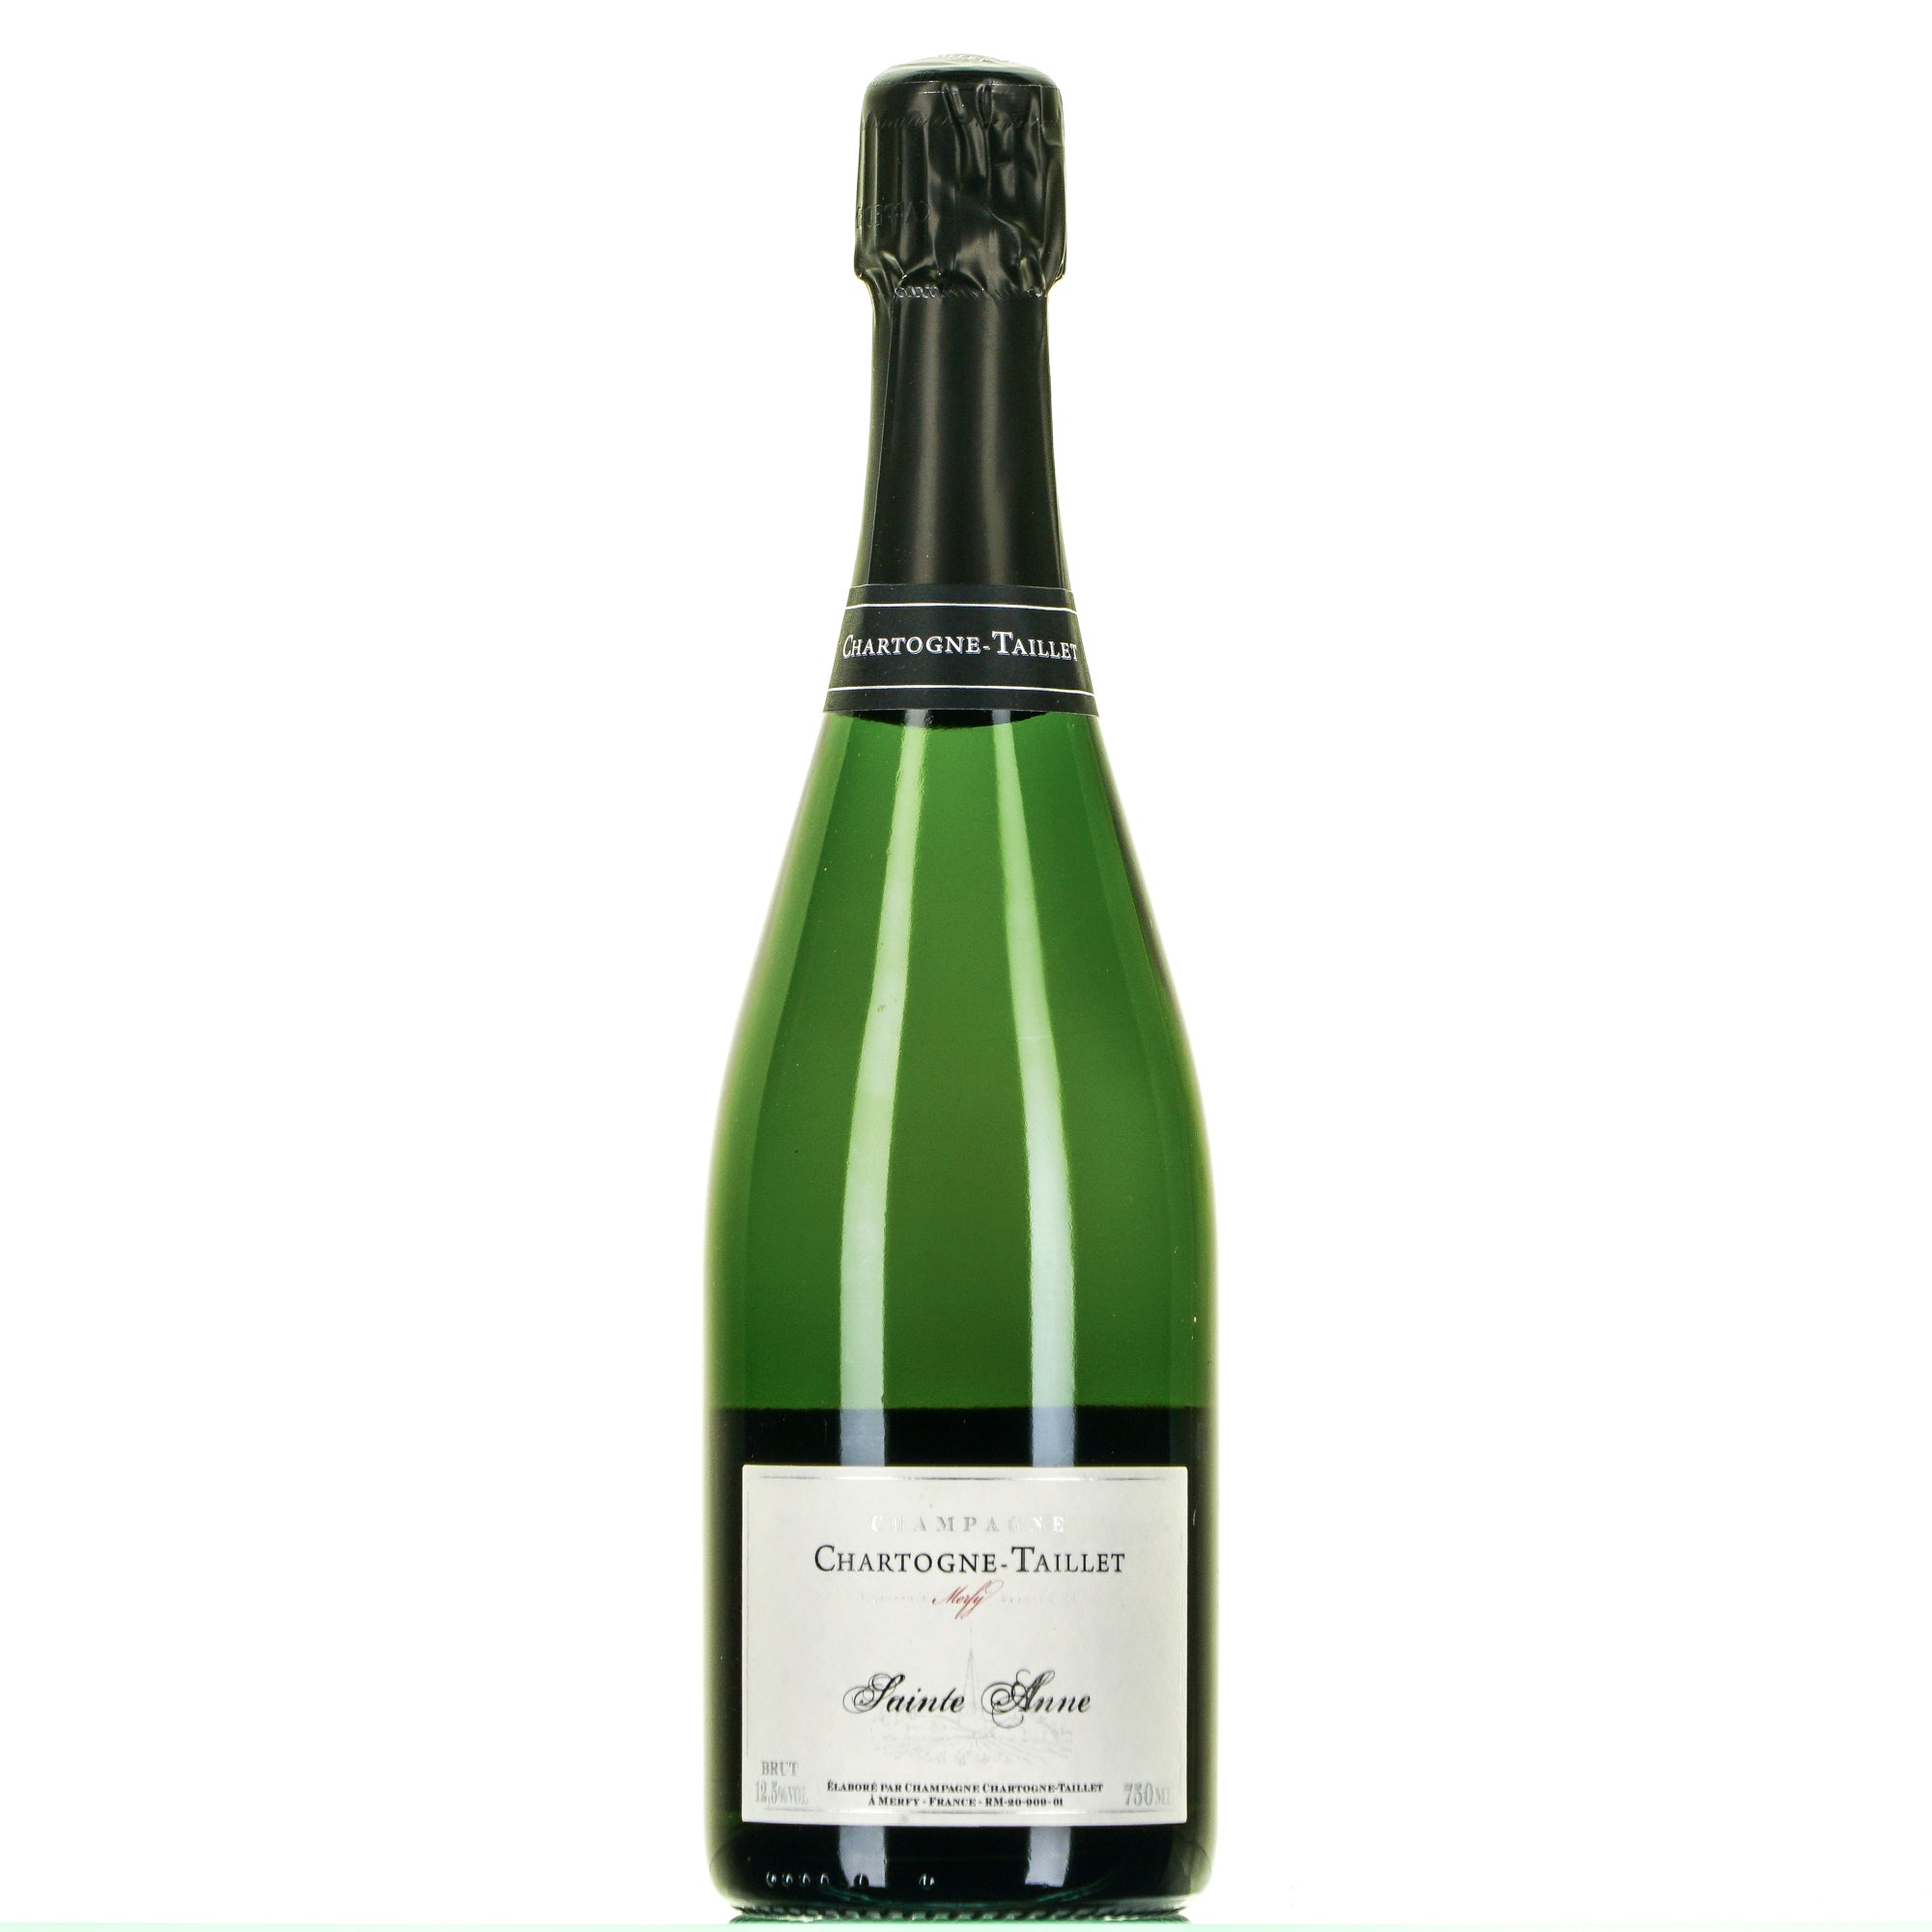 Laciviltadelbere Champagne Brut "Sainte Anne" Chartogne Taillet